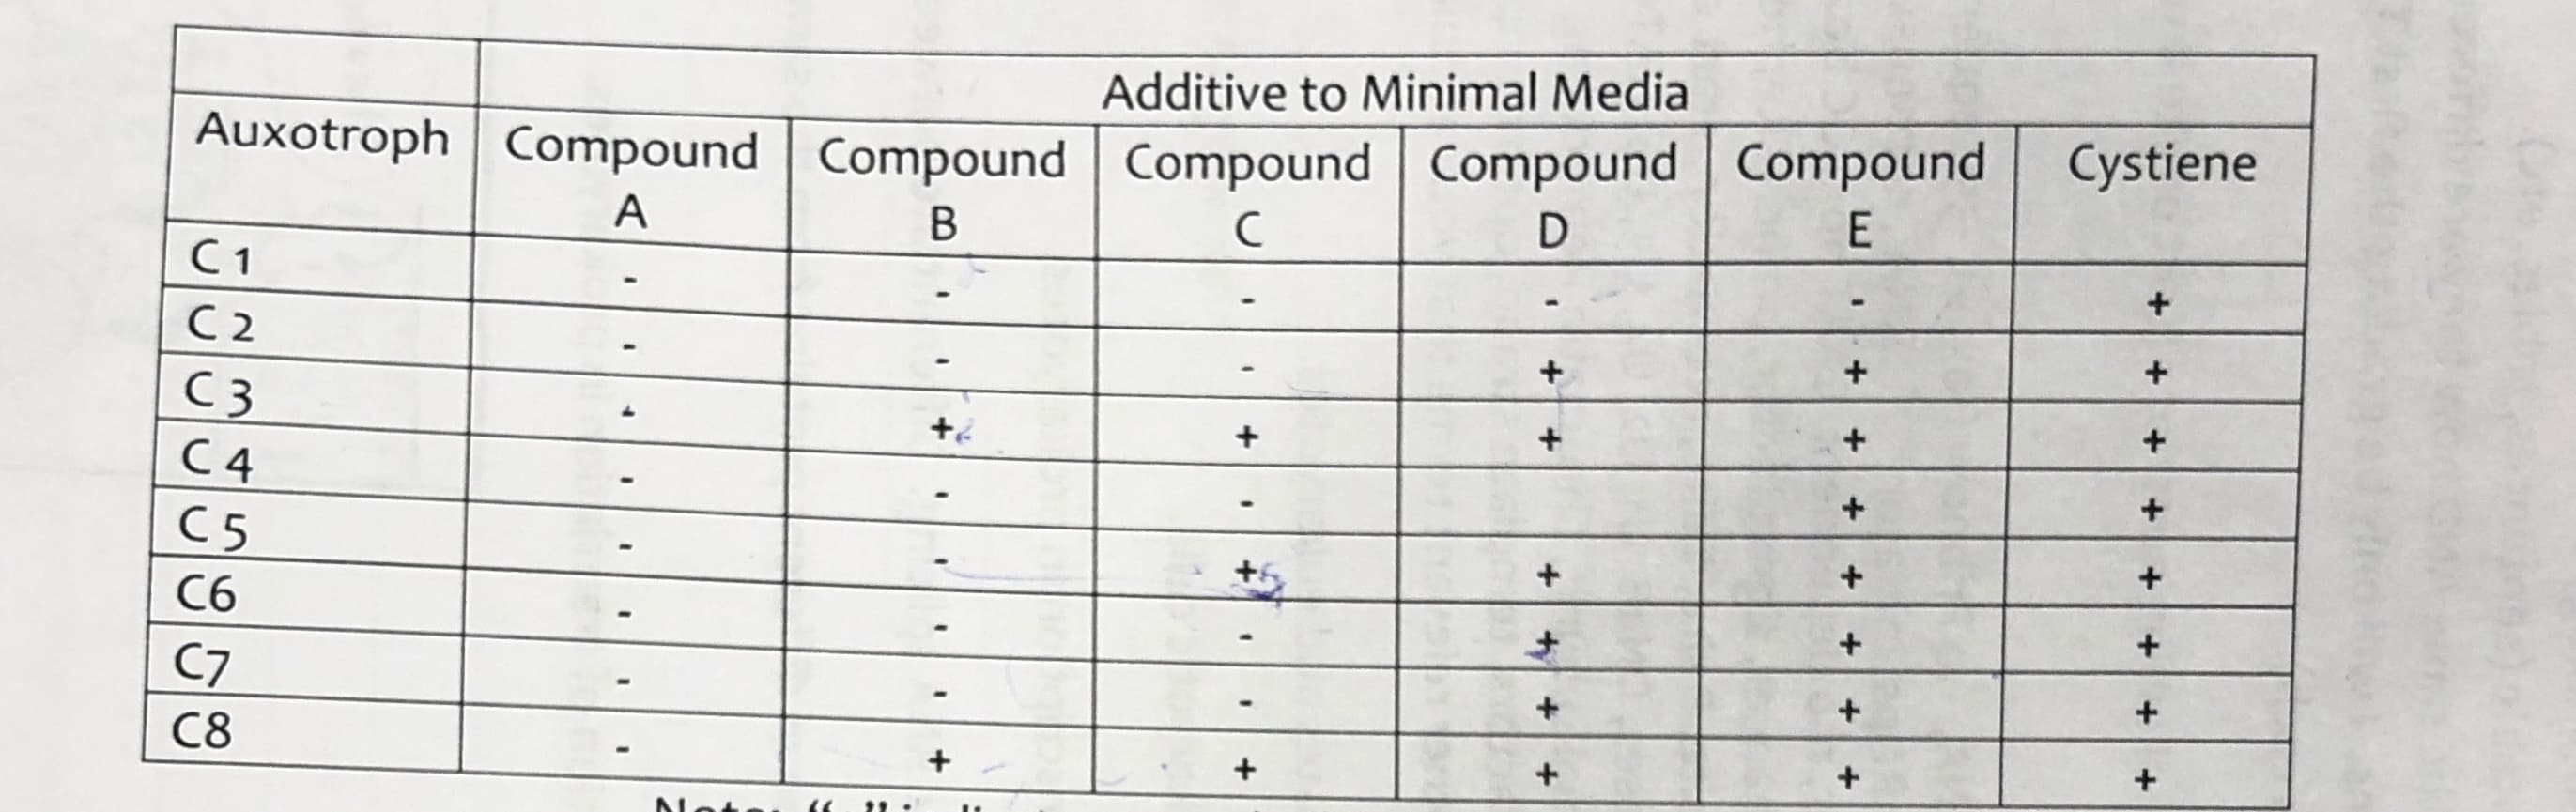 Additive to Minimal Media
Auxotroph
Compound Compound
Compound Compound Compound
Cystiene
C1
СЗ
C5
C6
C7
C8
+t
